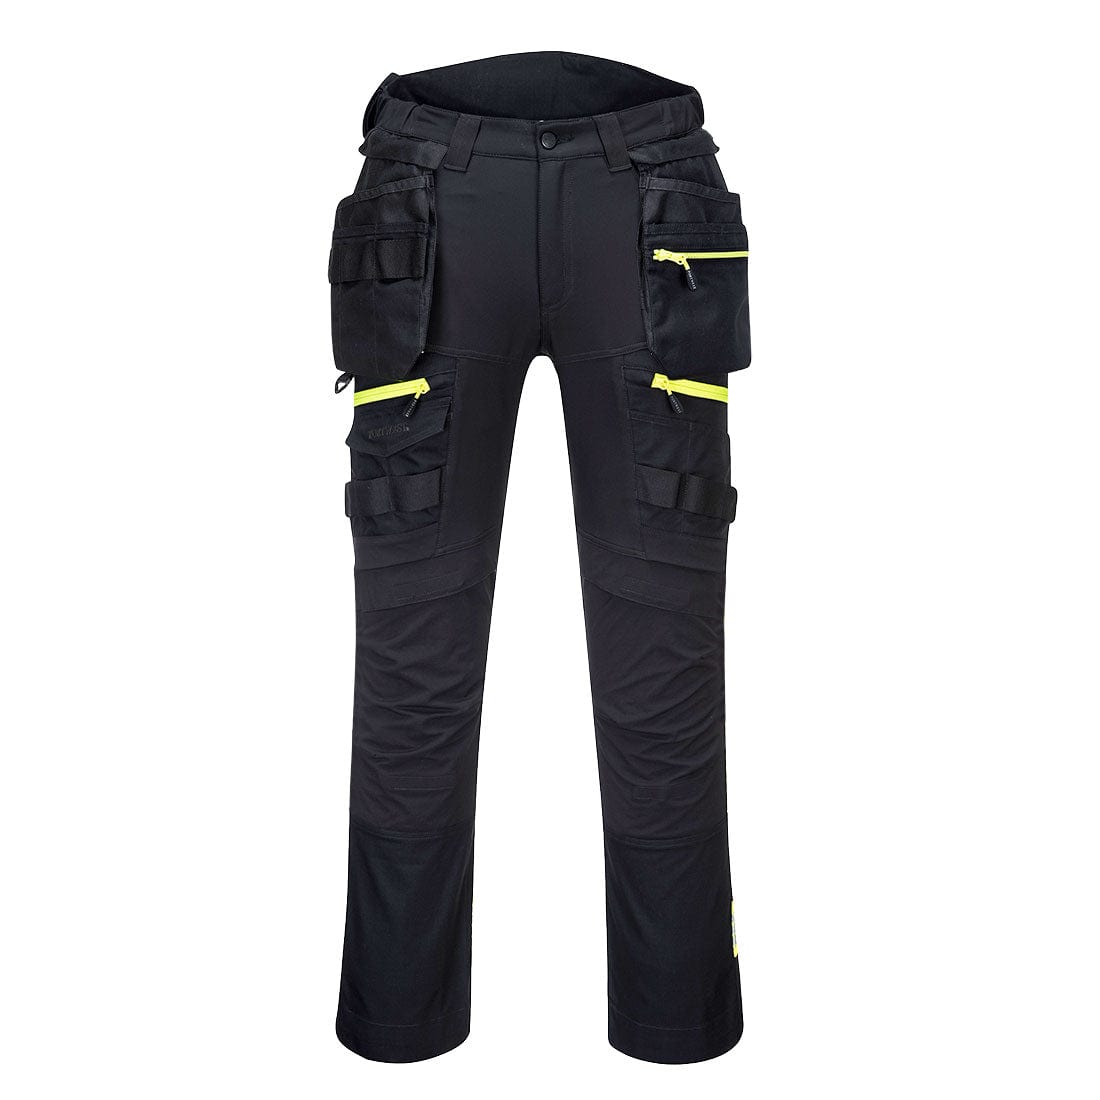 DX440 - Detachable Holster Pocket Trouser